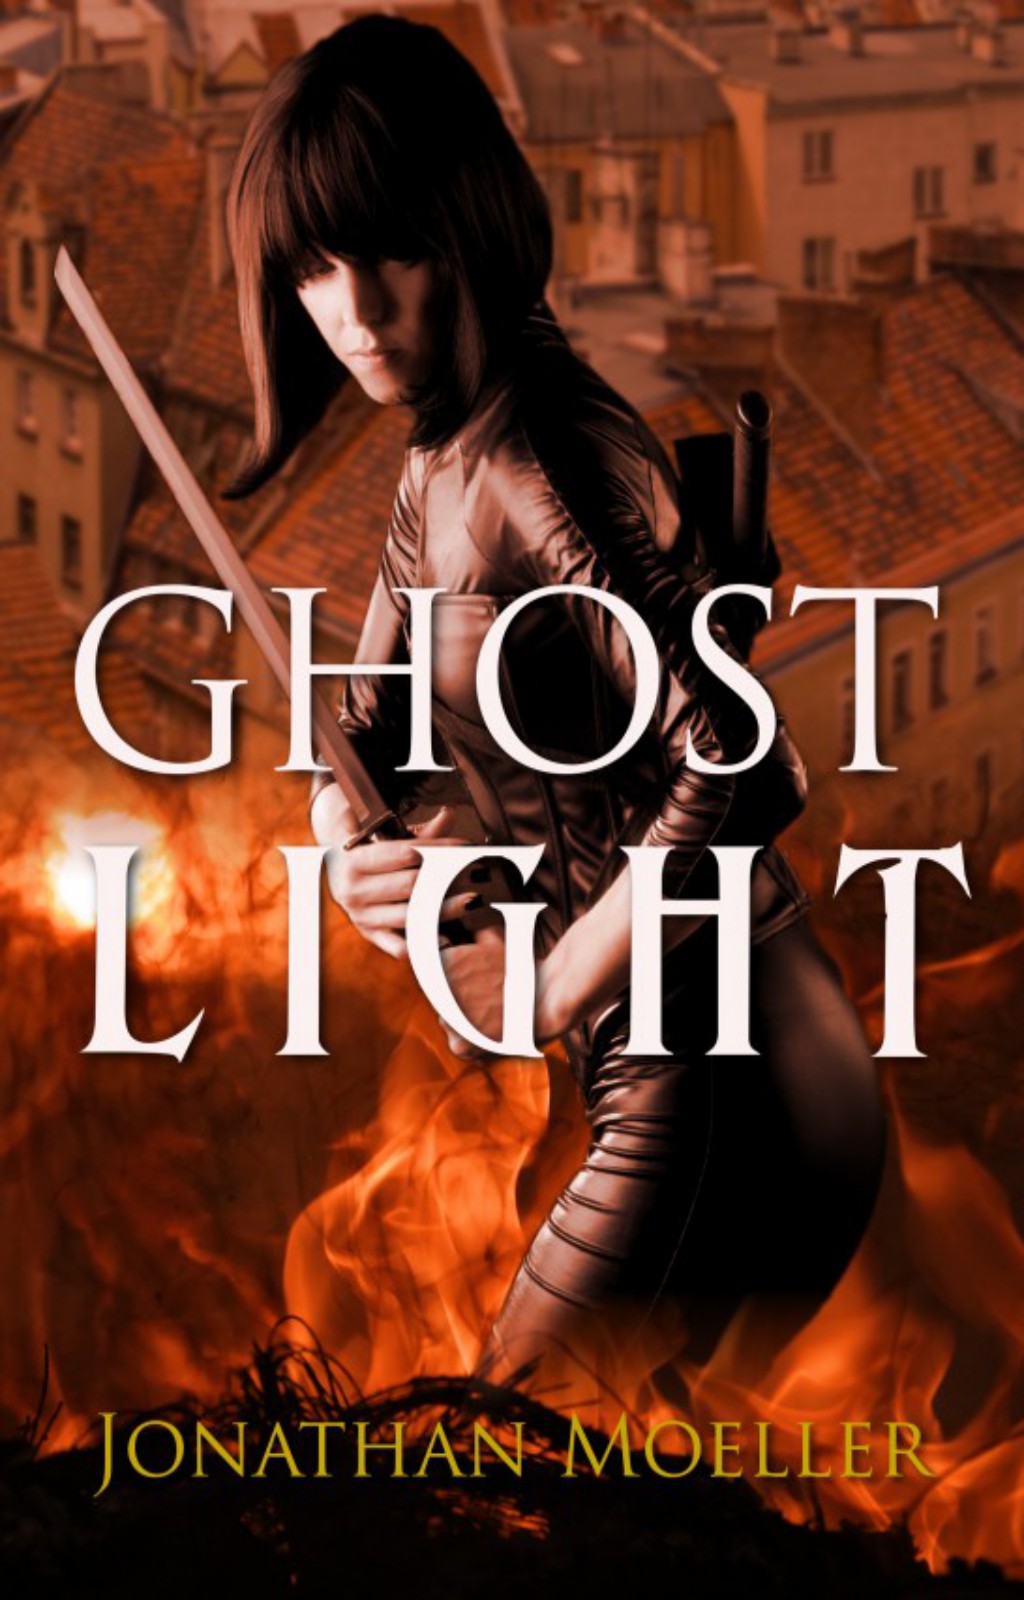 Ghost Light by Jonathan Moeller